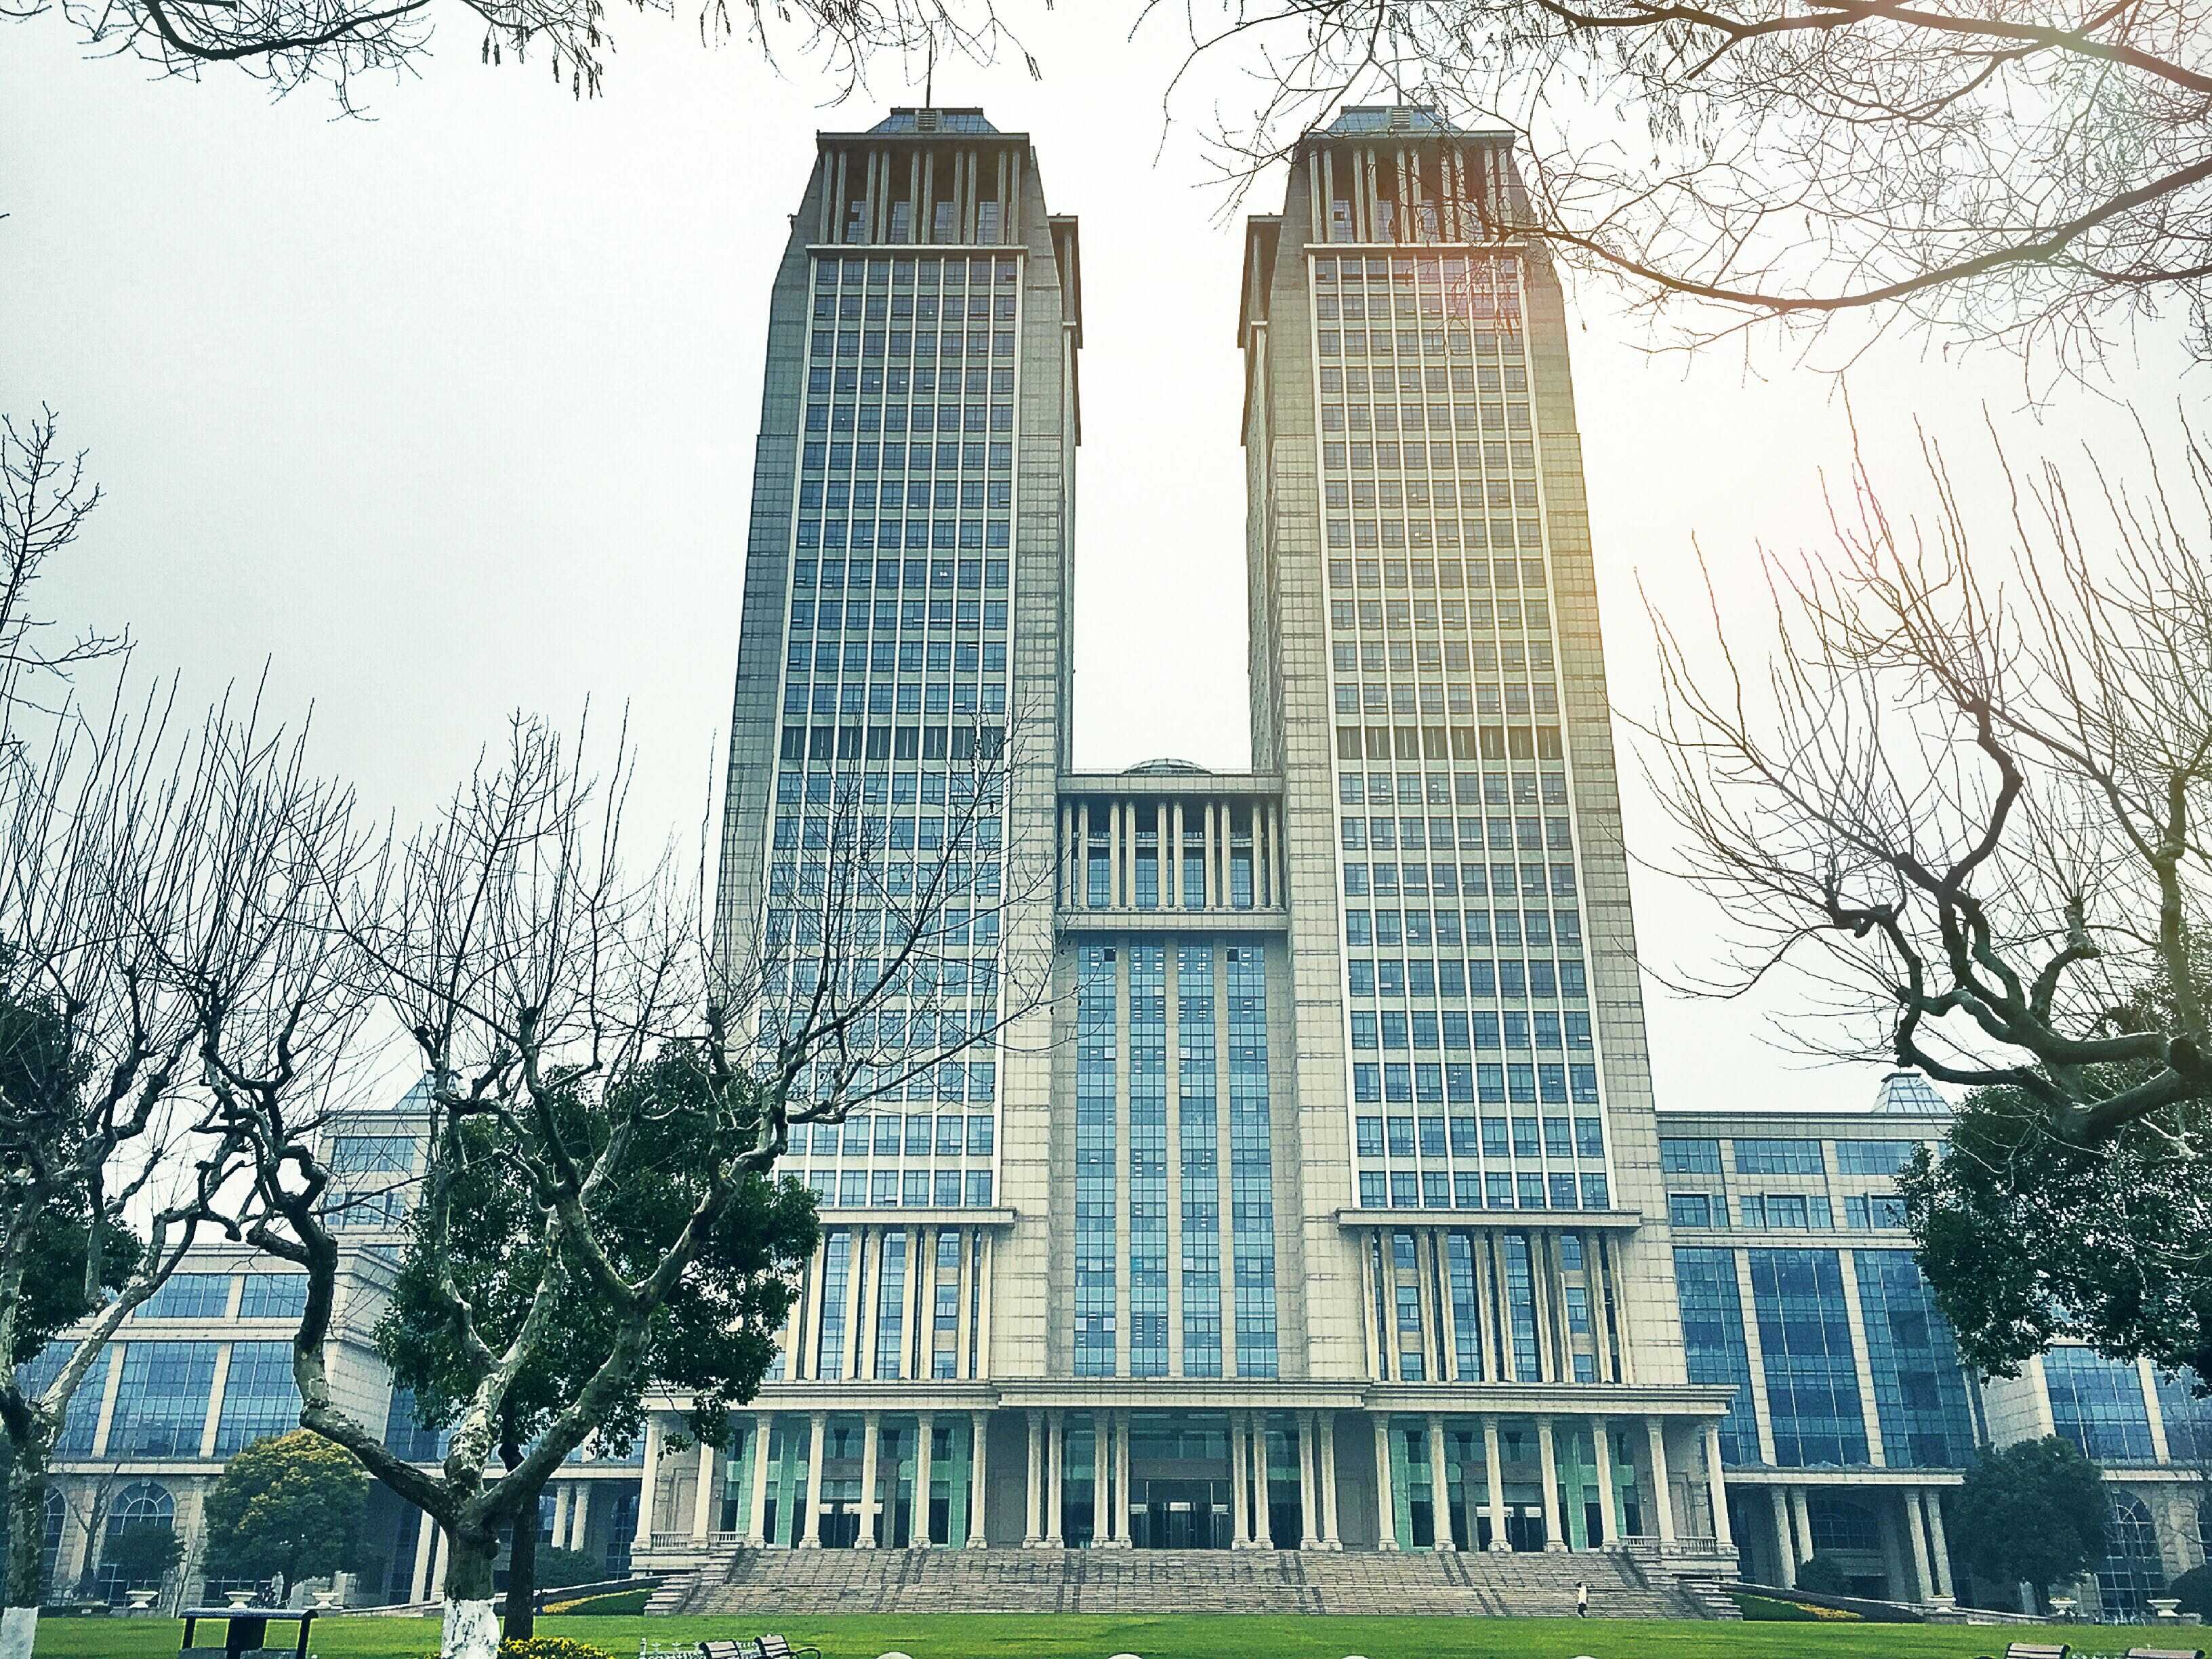 复旦大学 邯郸校区,类似双子塔的光华主楼,楼前有一片开阔的绿茵场